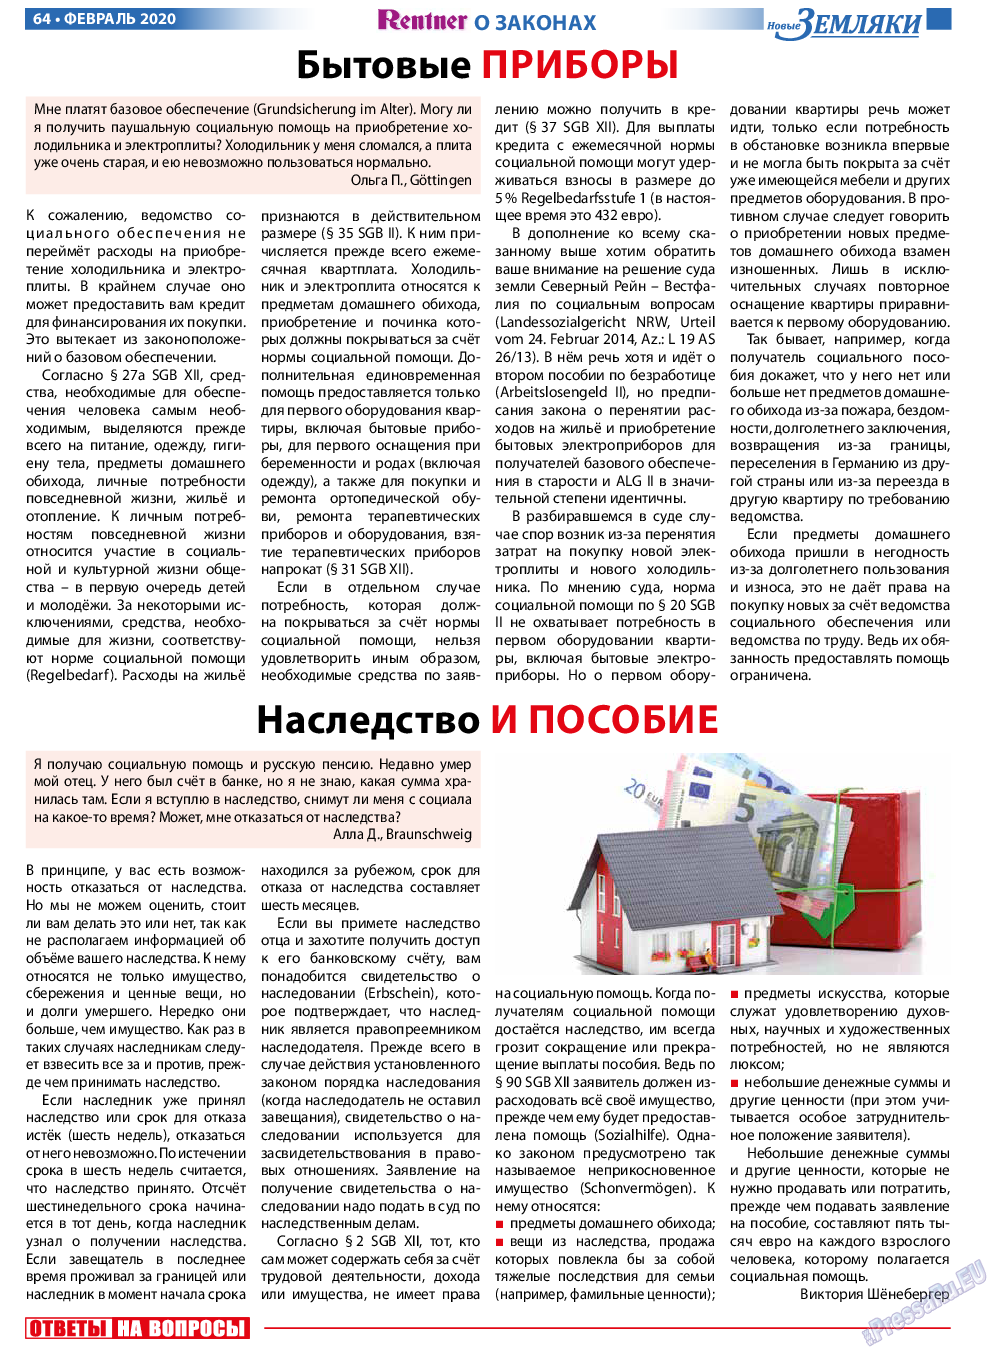 Новые Земляки (газета). 2020 год, номер 2, стр. 64